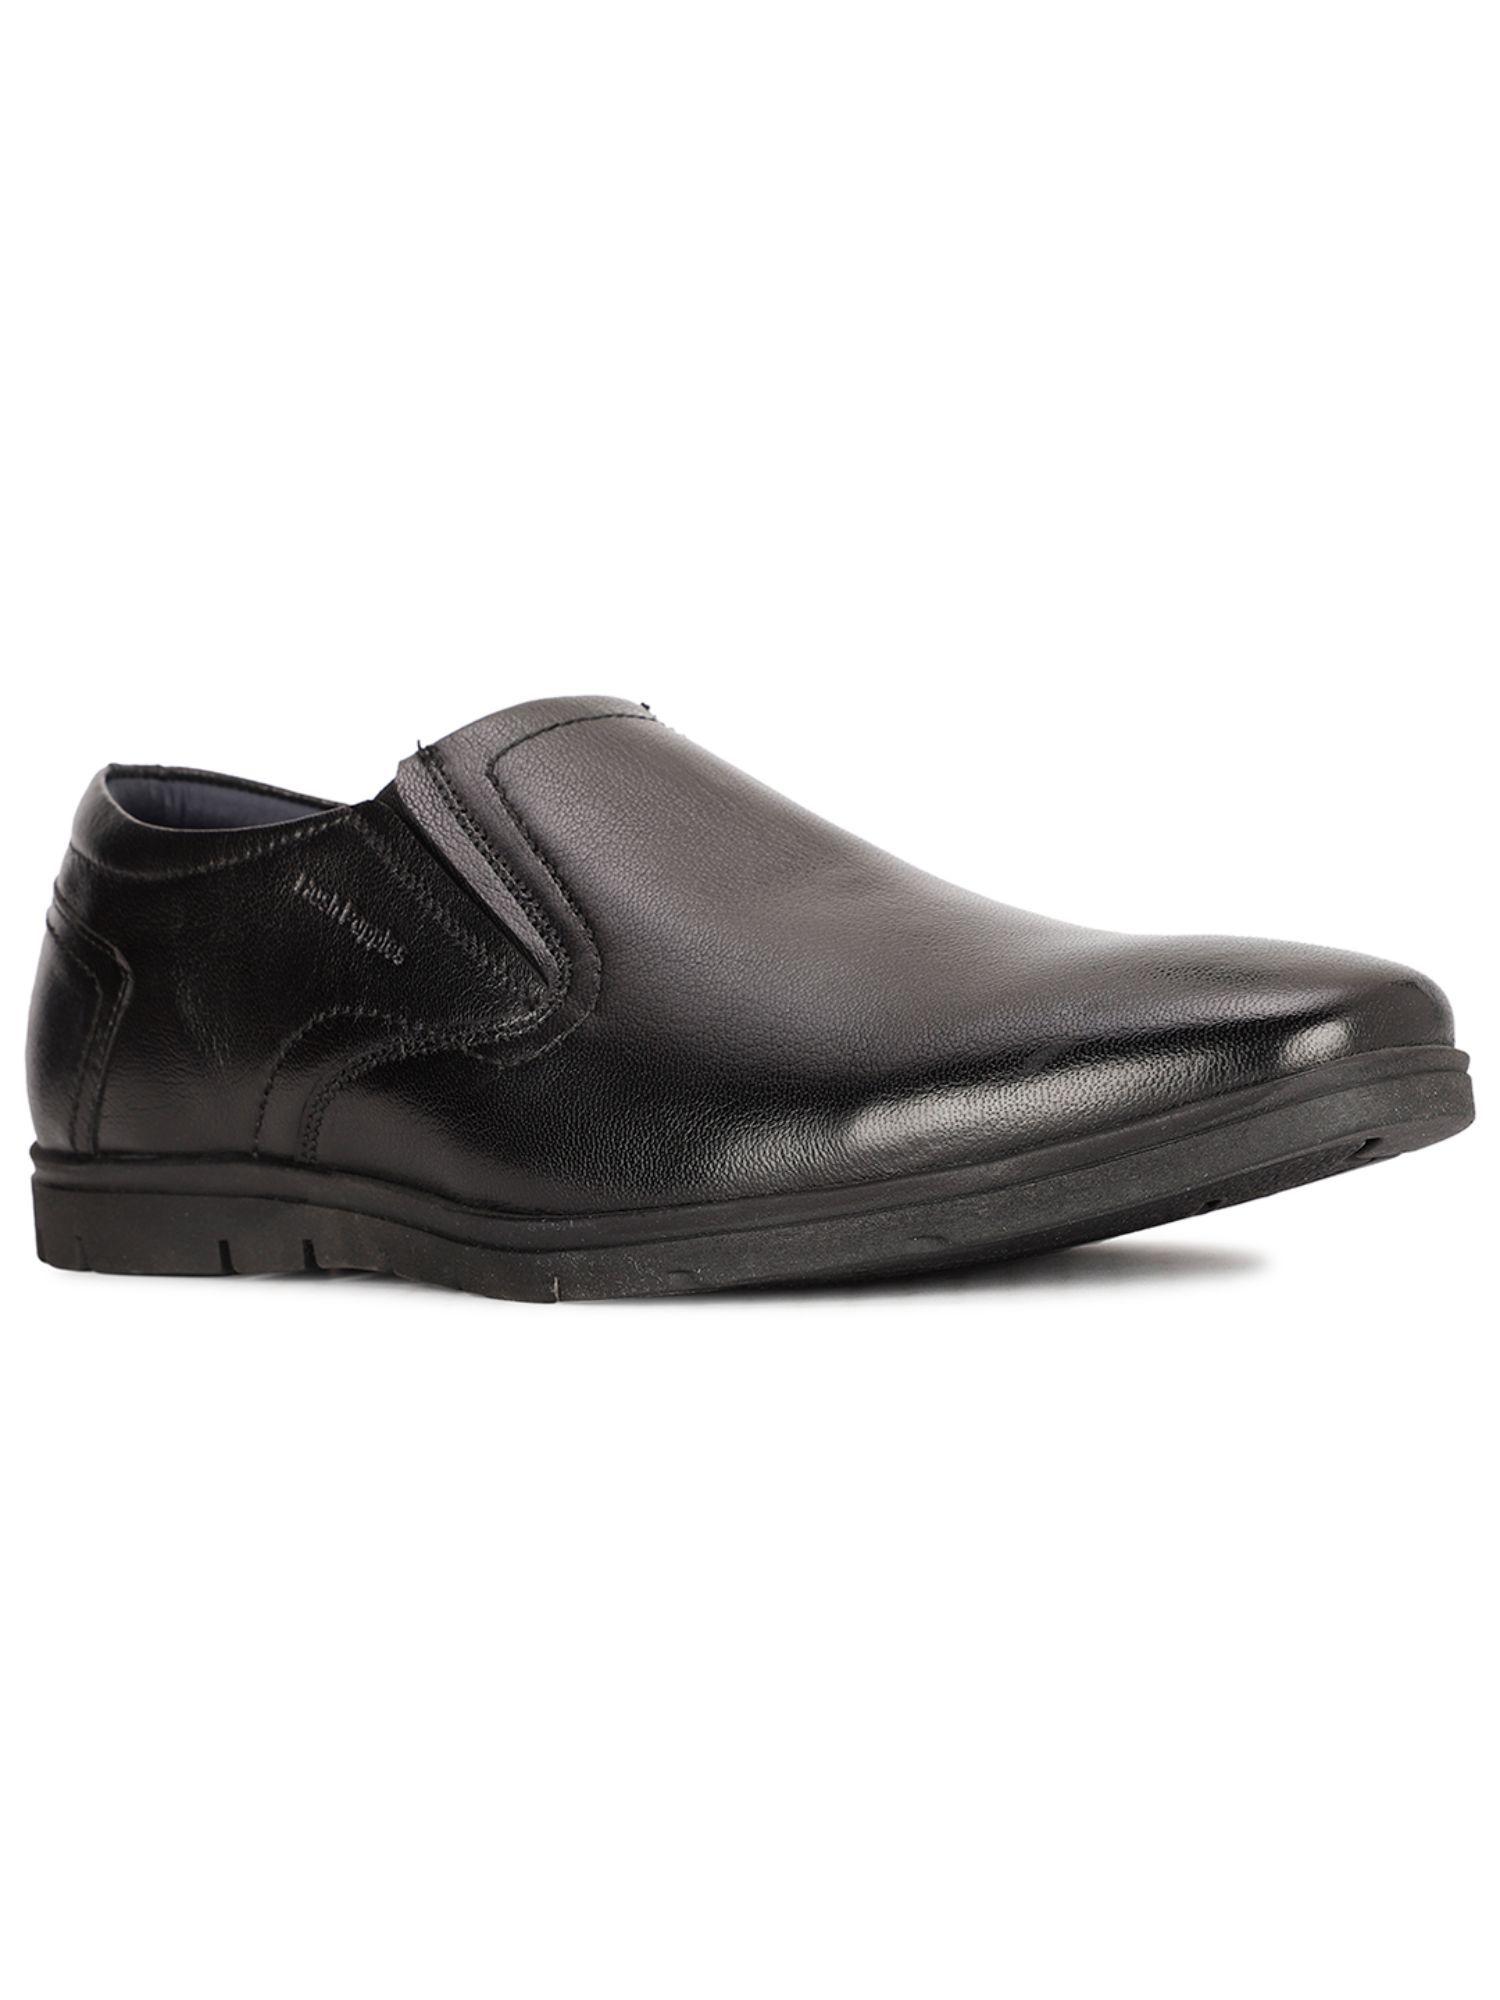 mens-black-slip-on-formal-loafers